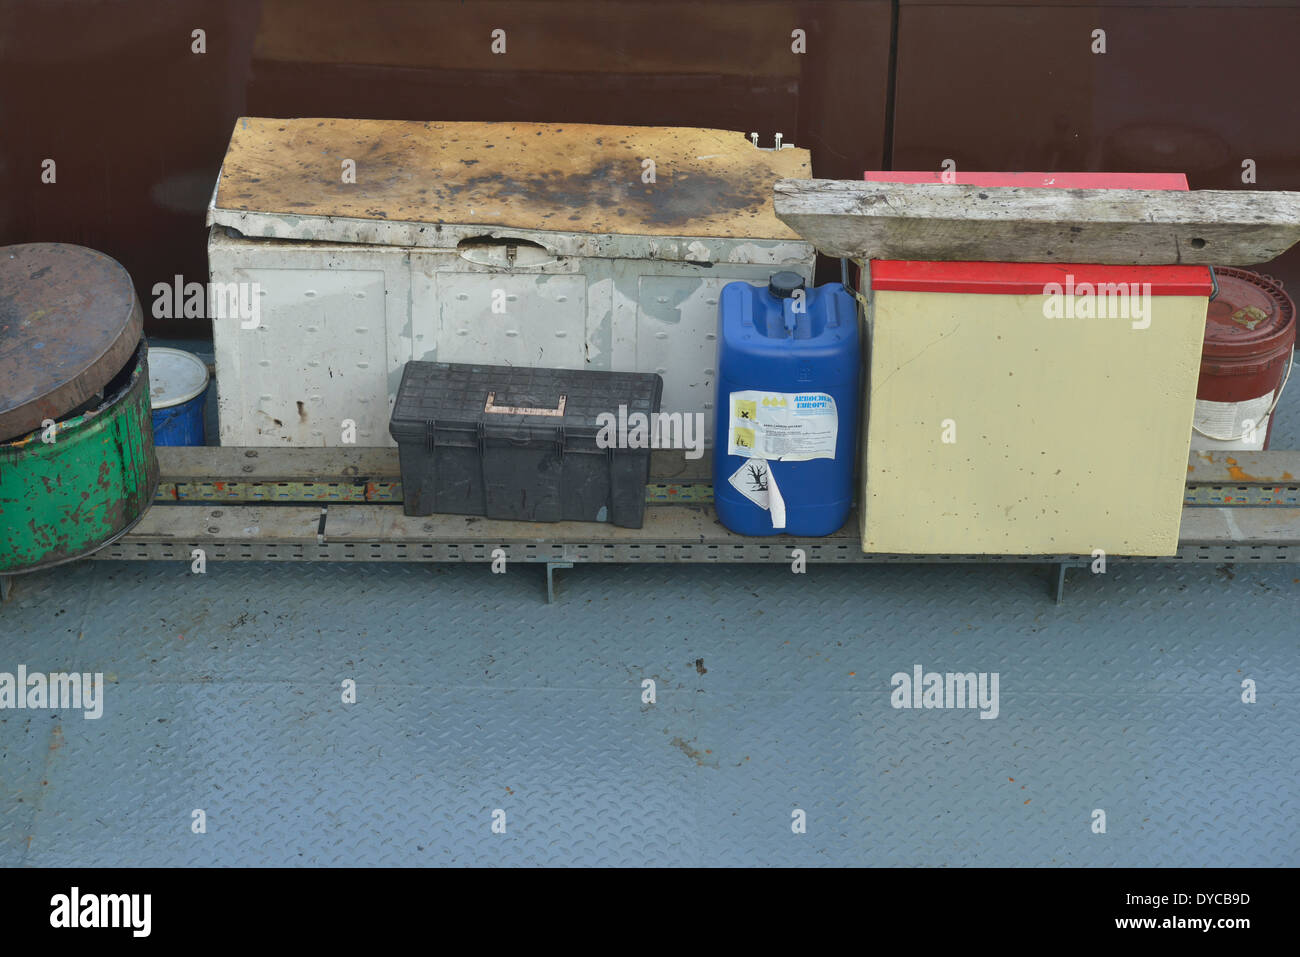 Détail de boîtes à outils sur un pont de pétroliers Banque D'Images